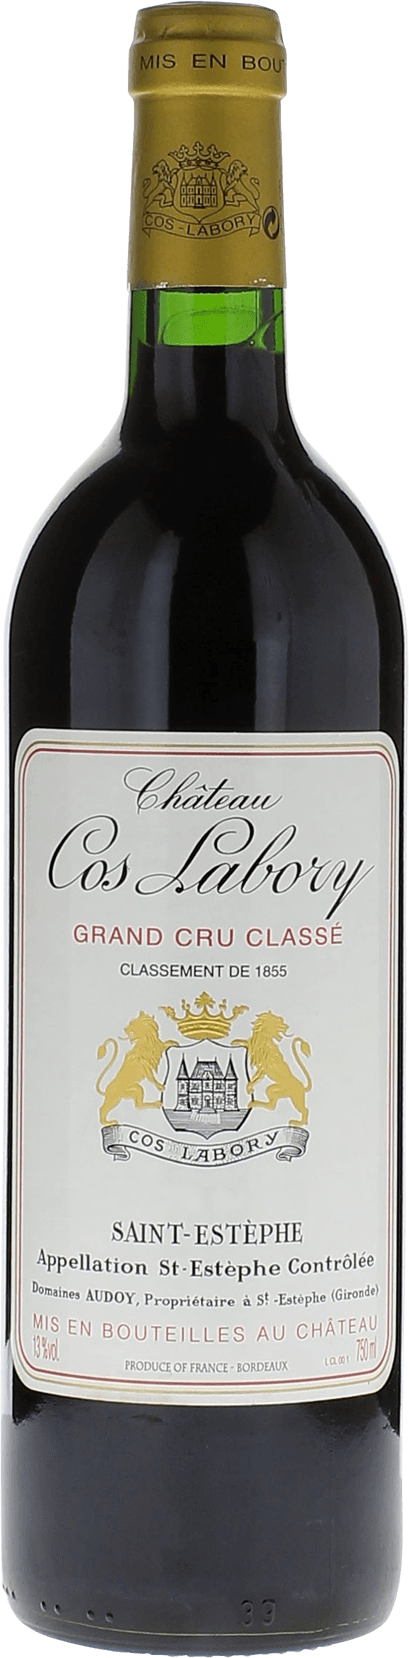 Cos labory 1996 5me Grand cru class Saint-Estphe, Bordeaux rouge